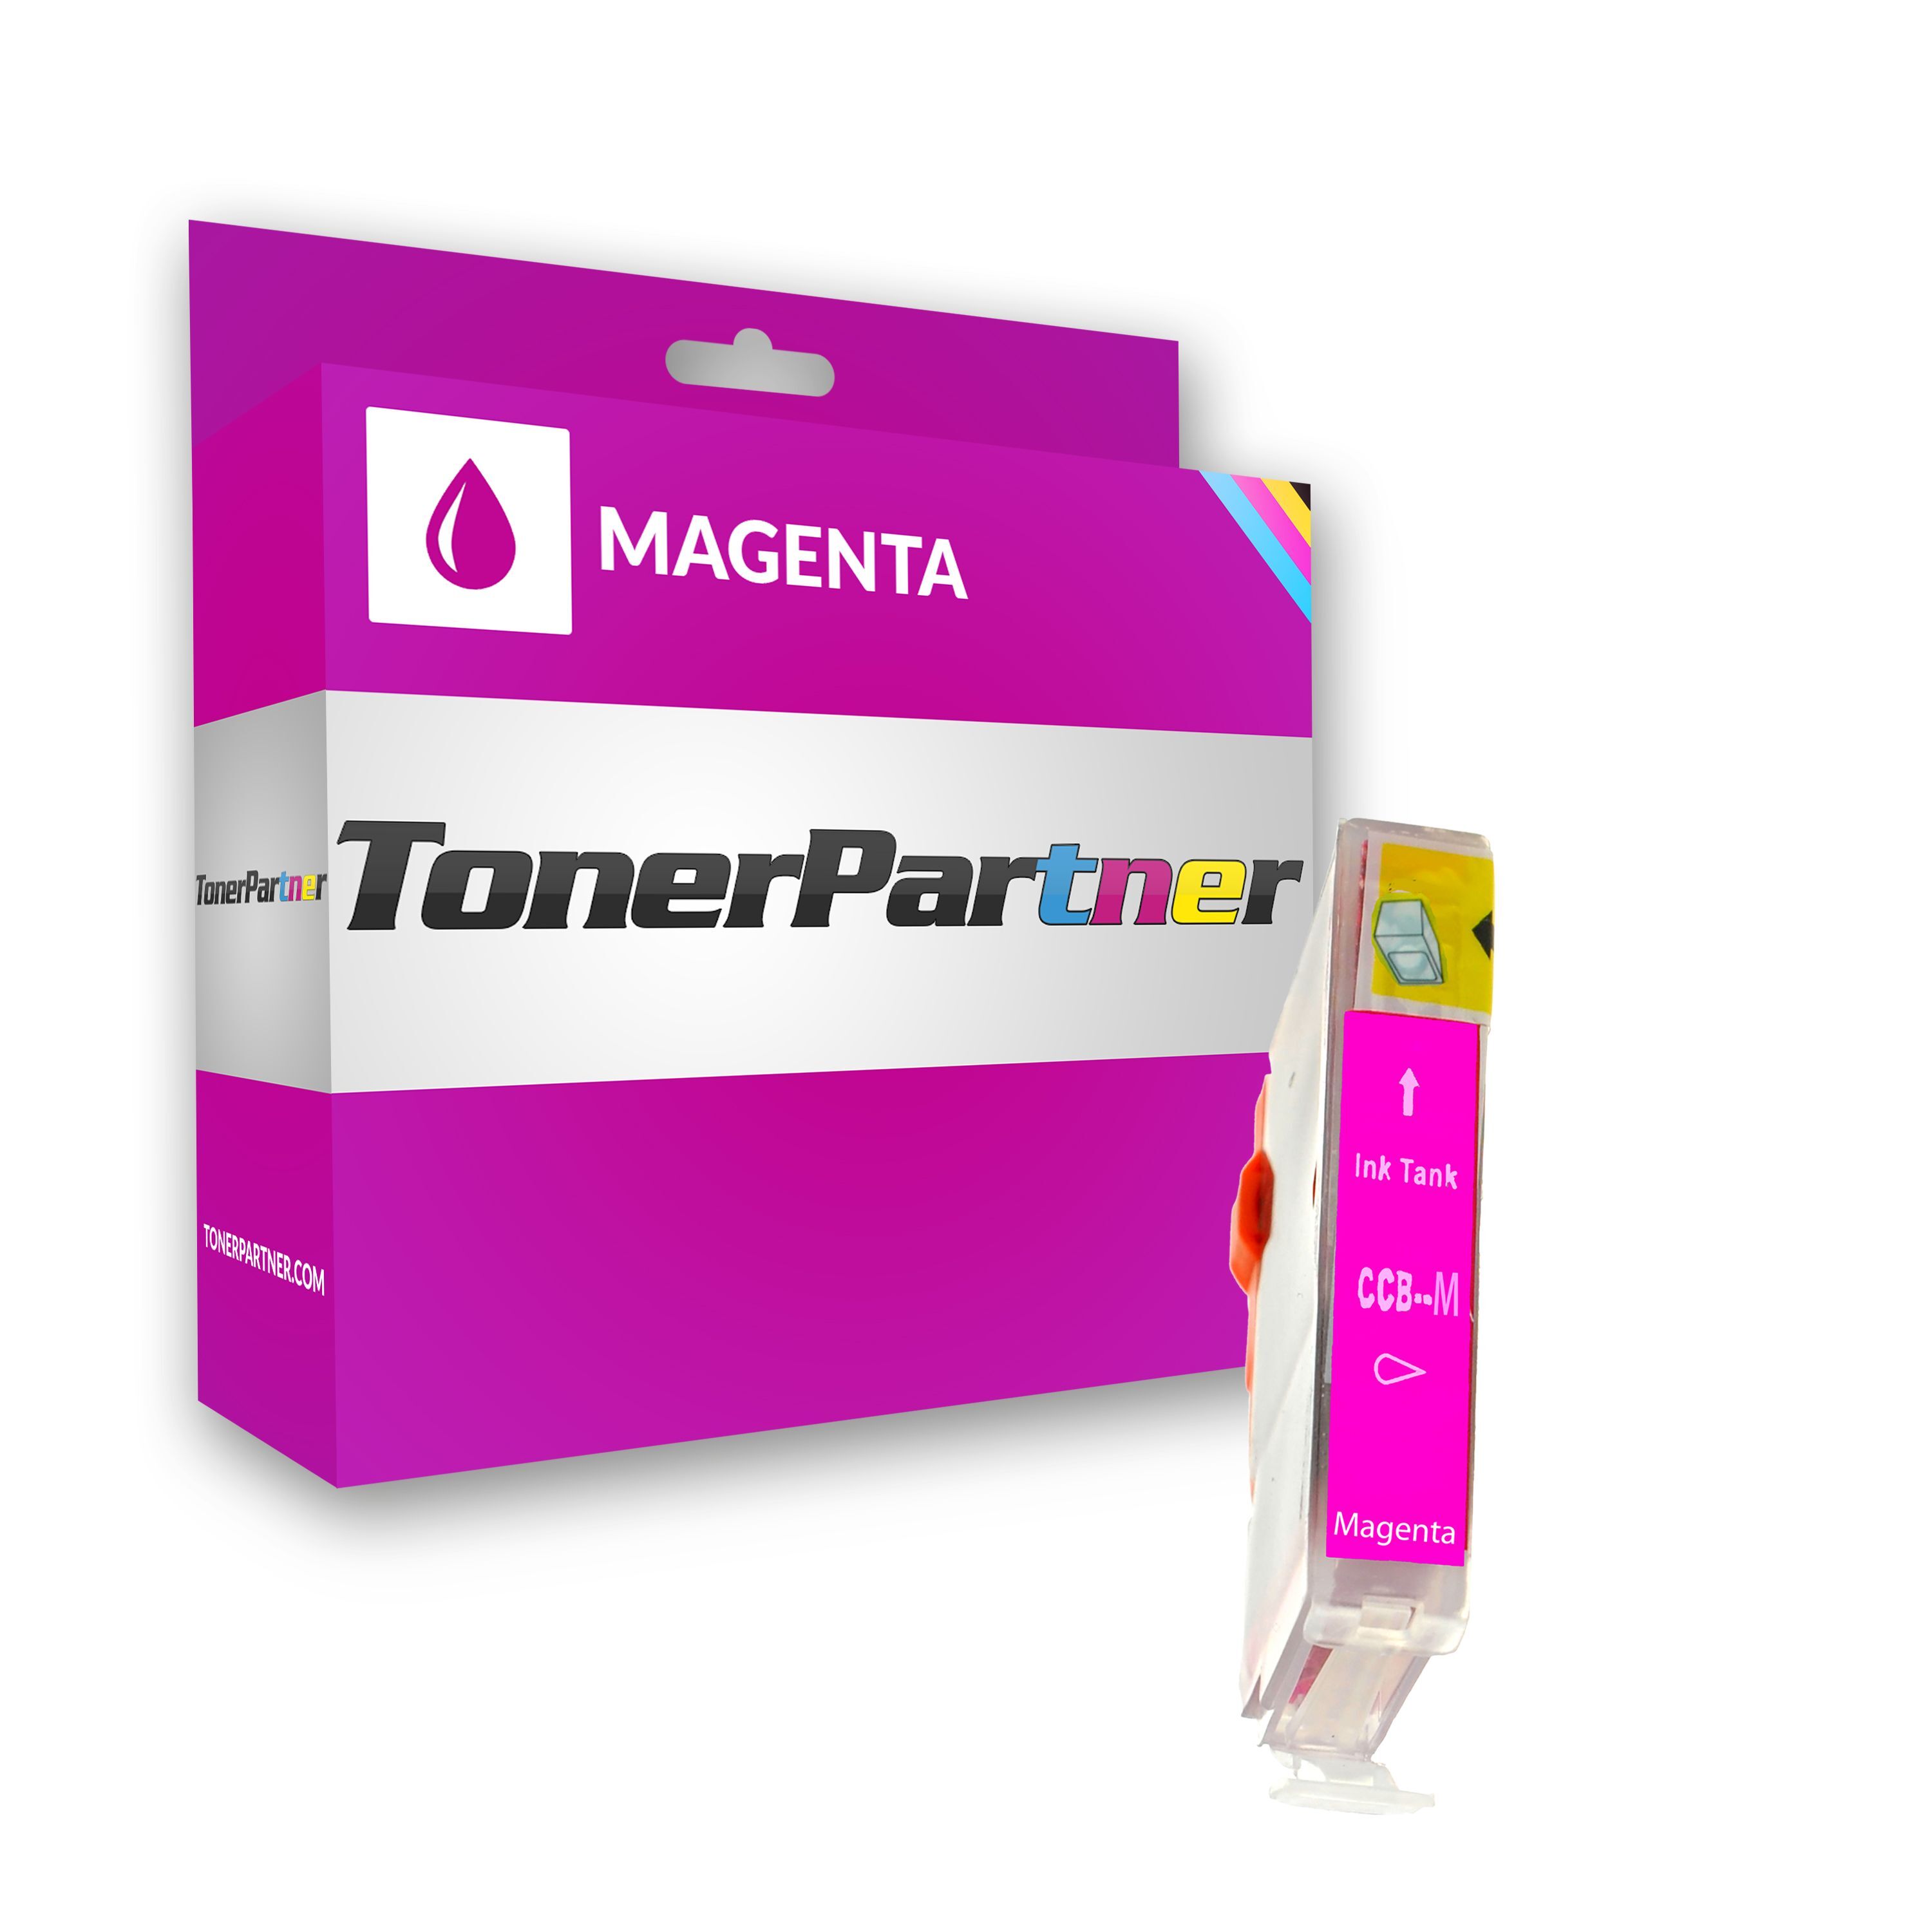 TonerPartner Kompatibel zu Canon Multipass C 600  F Tintenpatrone (BCI-3 EM / 4481 A 002) magenta, 400 Seiten, 0,86 Rp pro Seite, Inhalt: 12 ml von TonerPartner